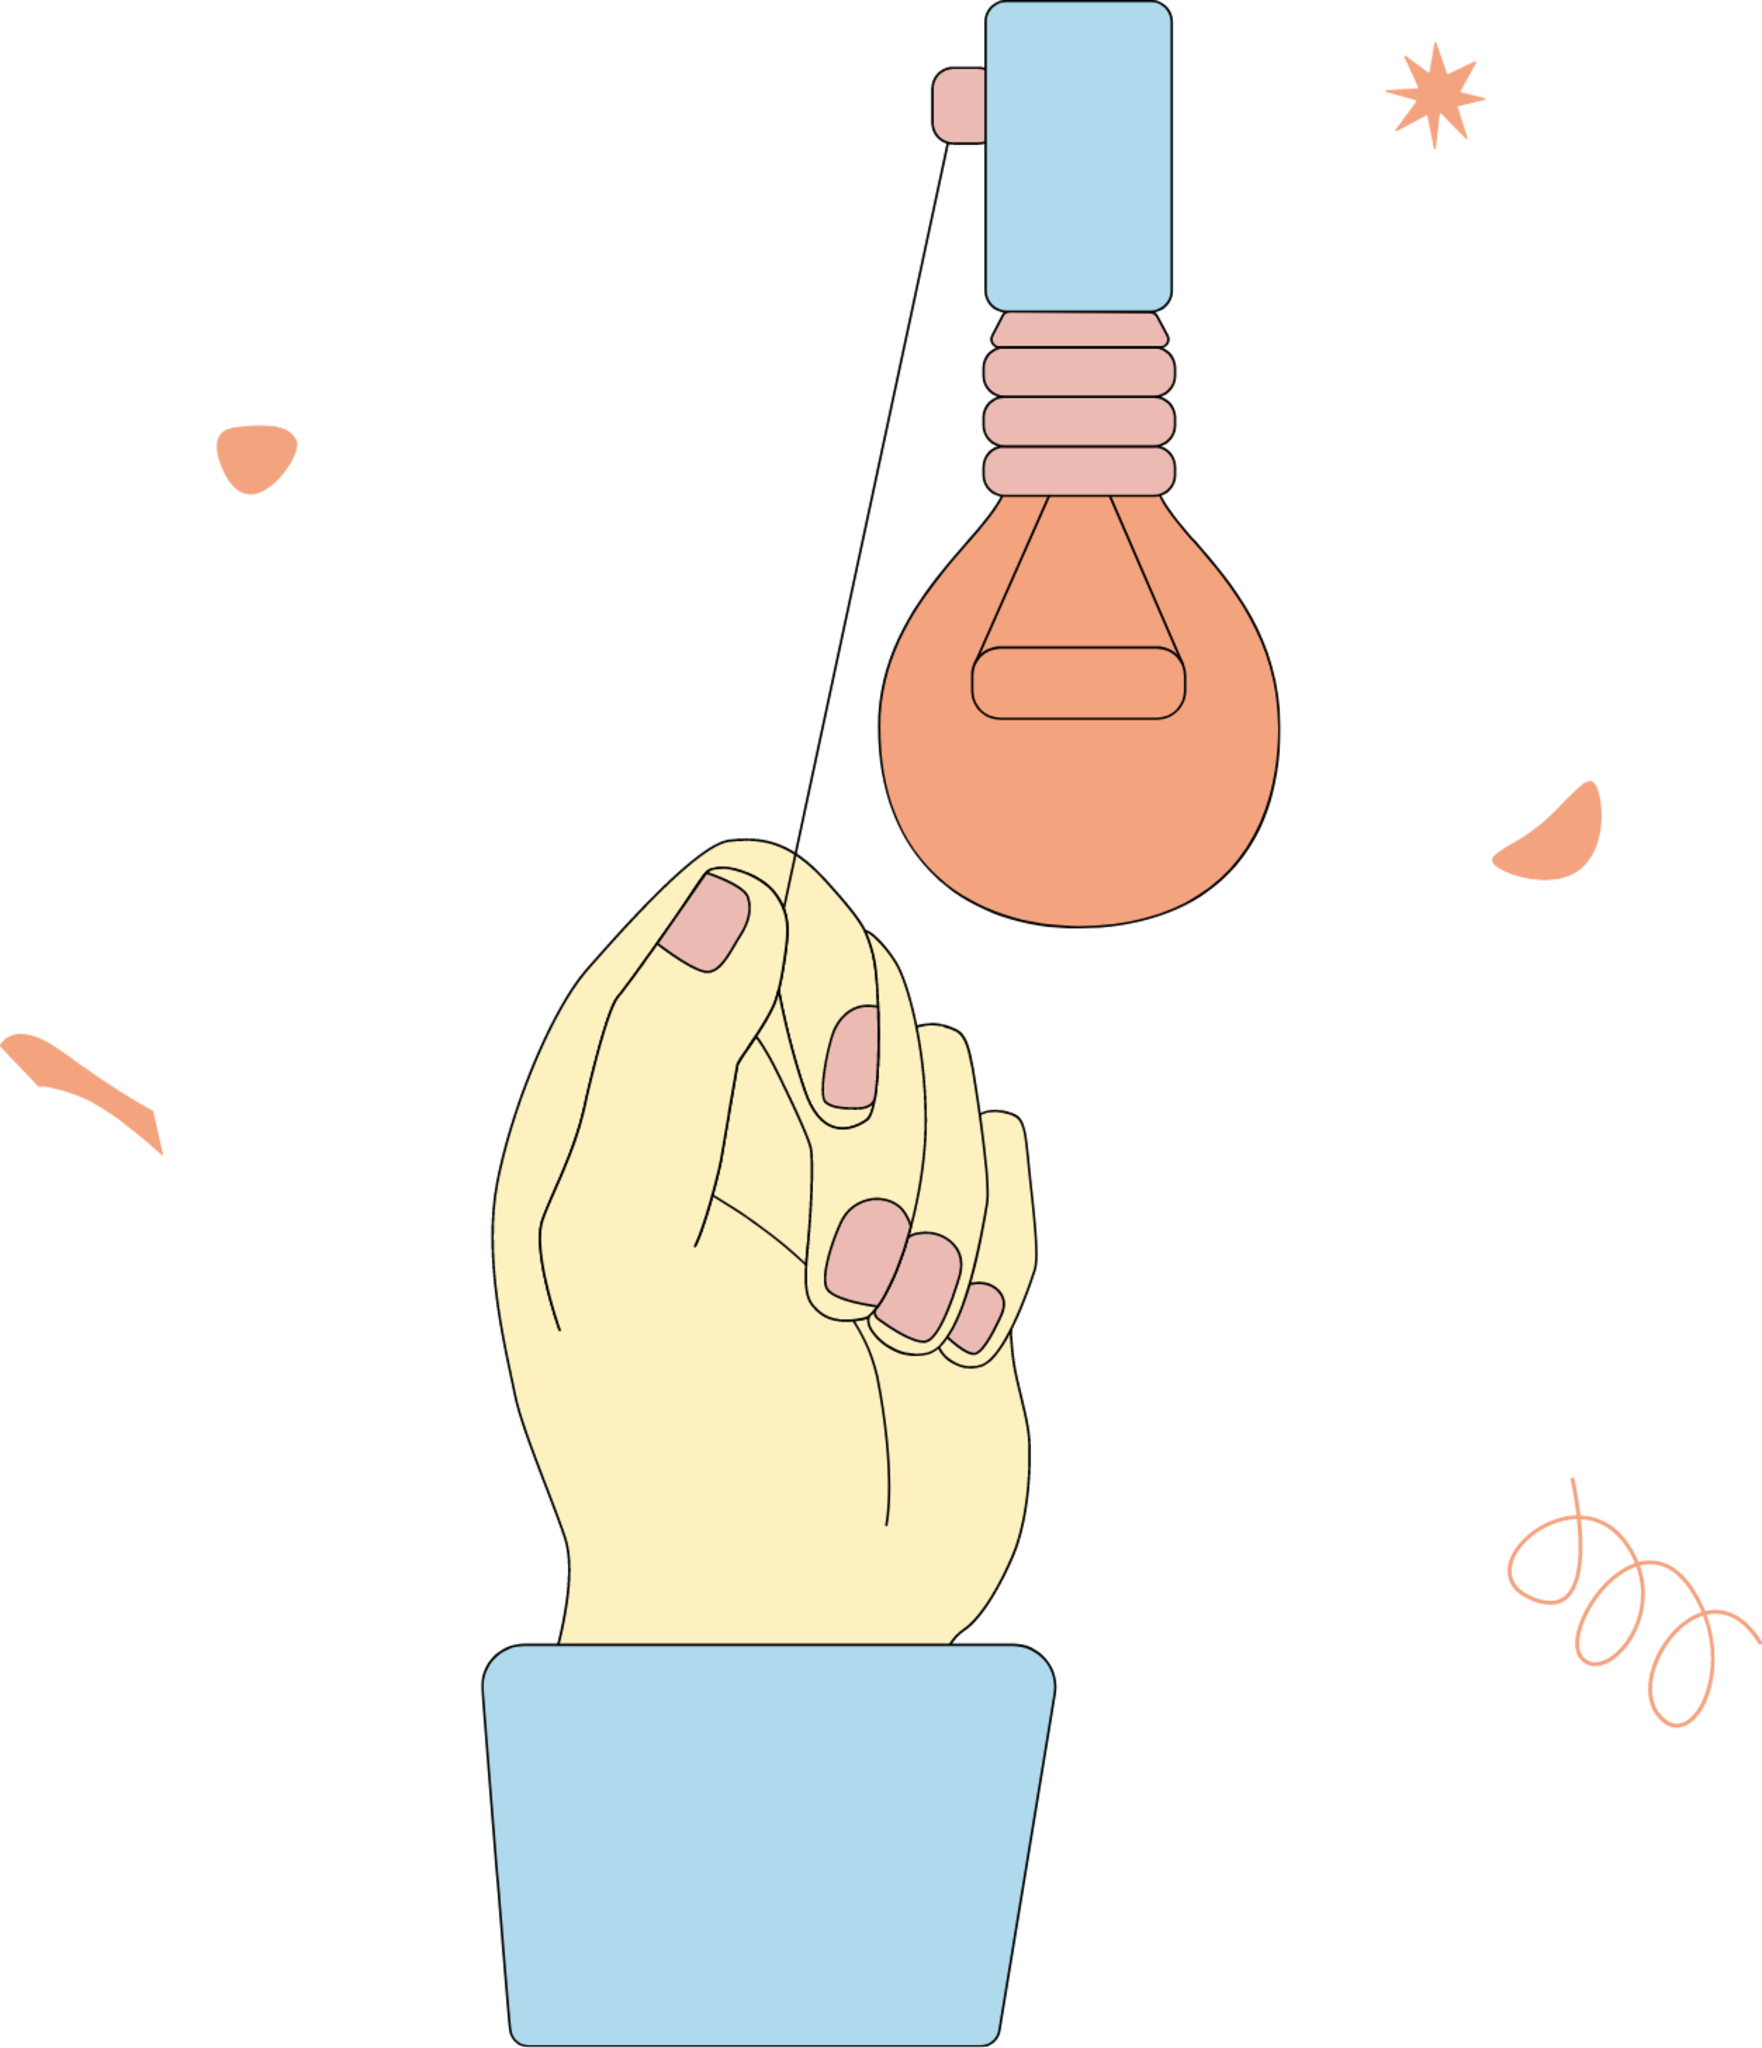 hand light bulb idea illustration